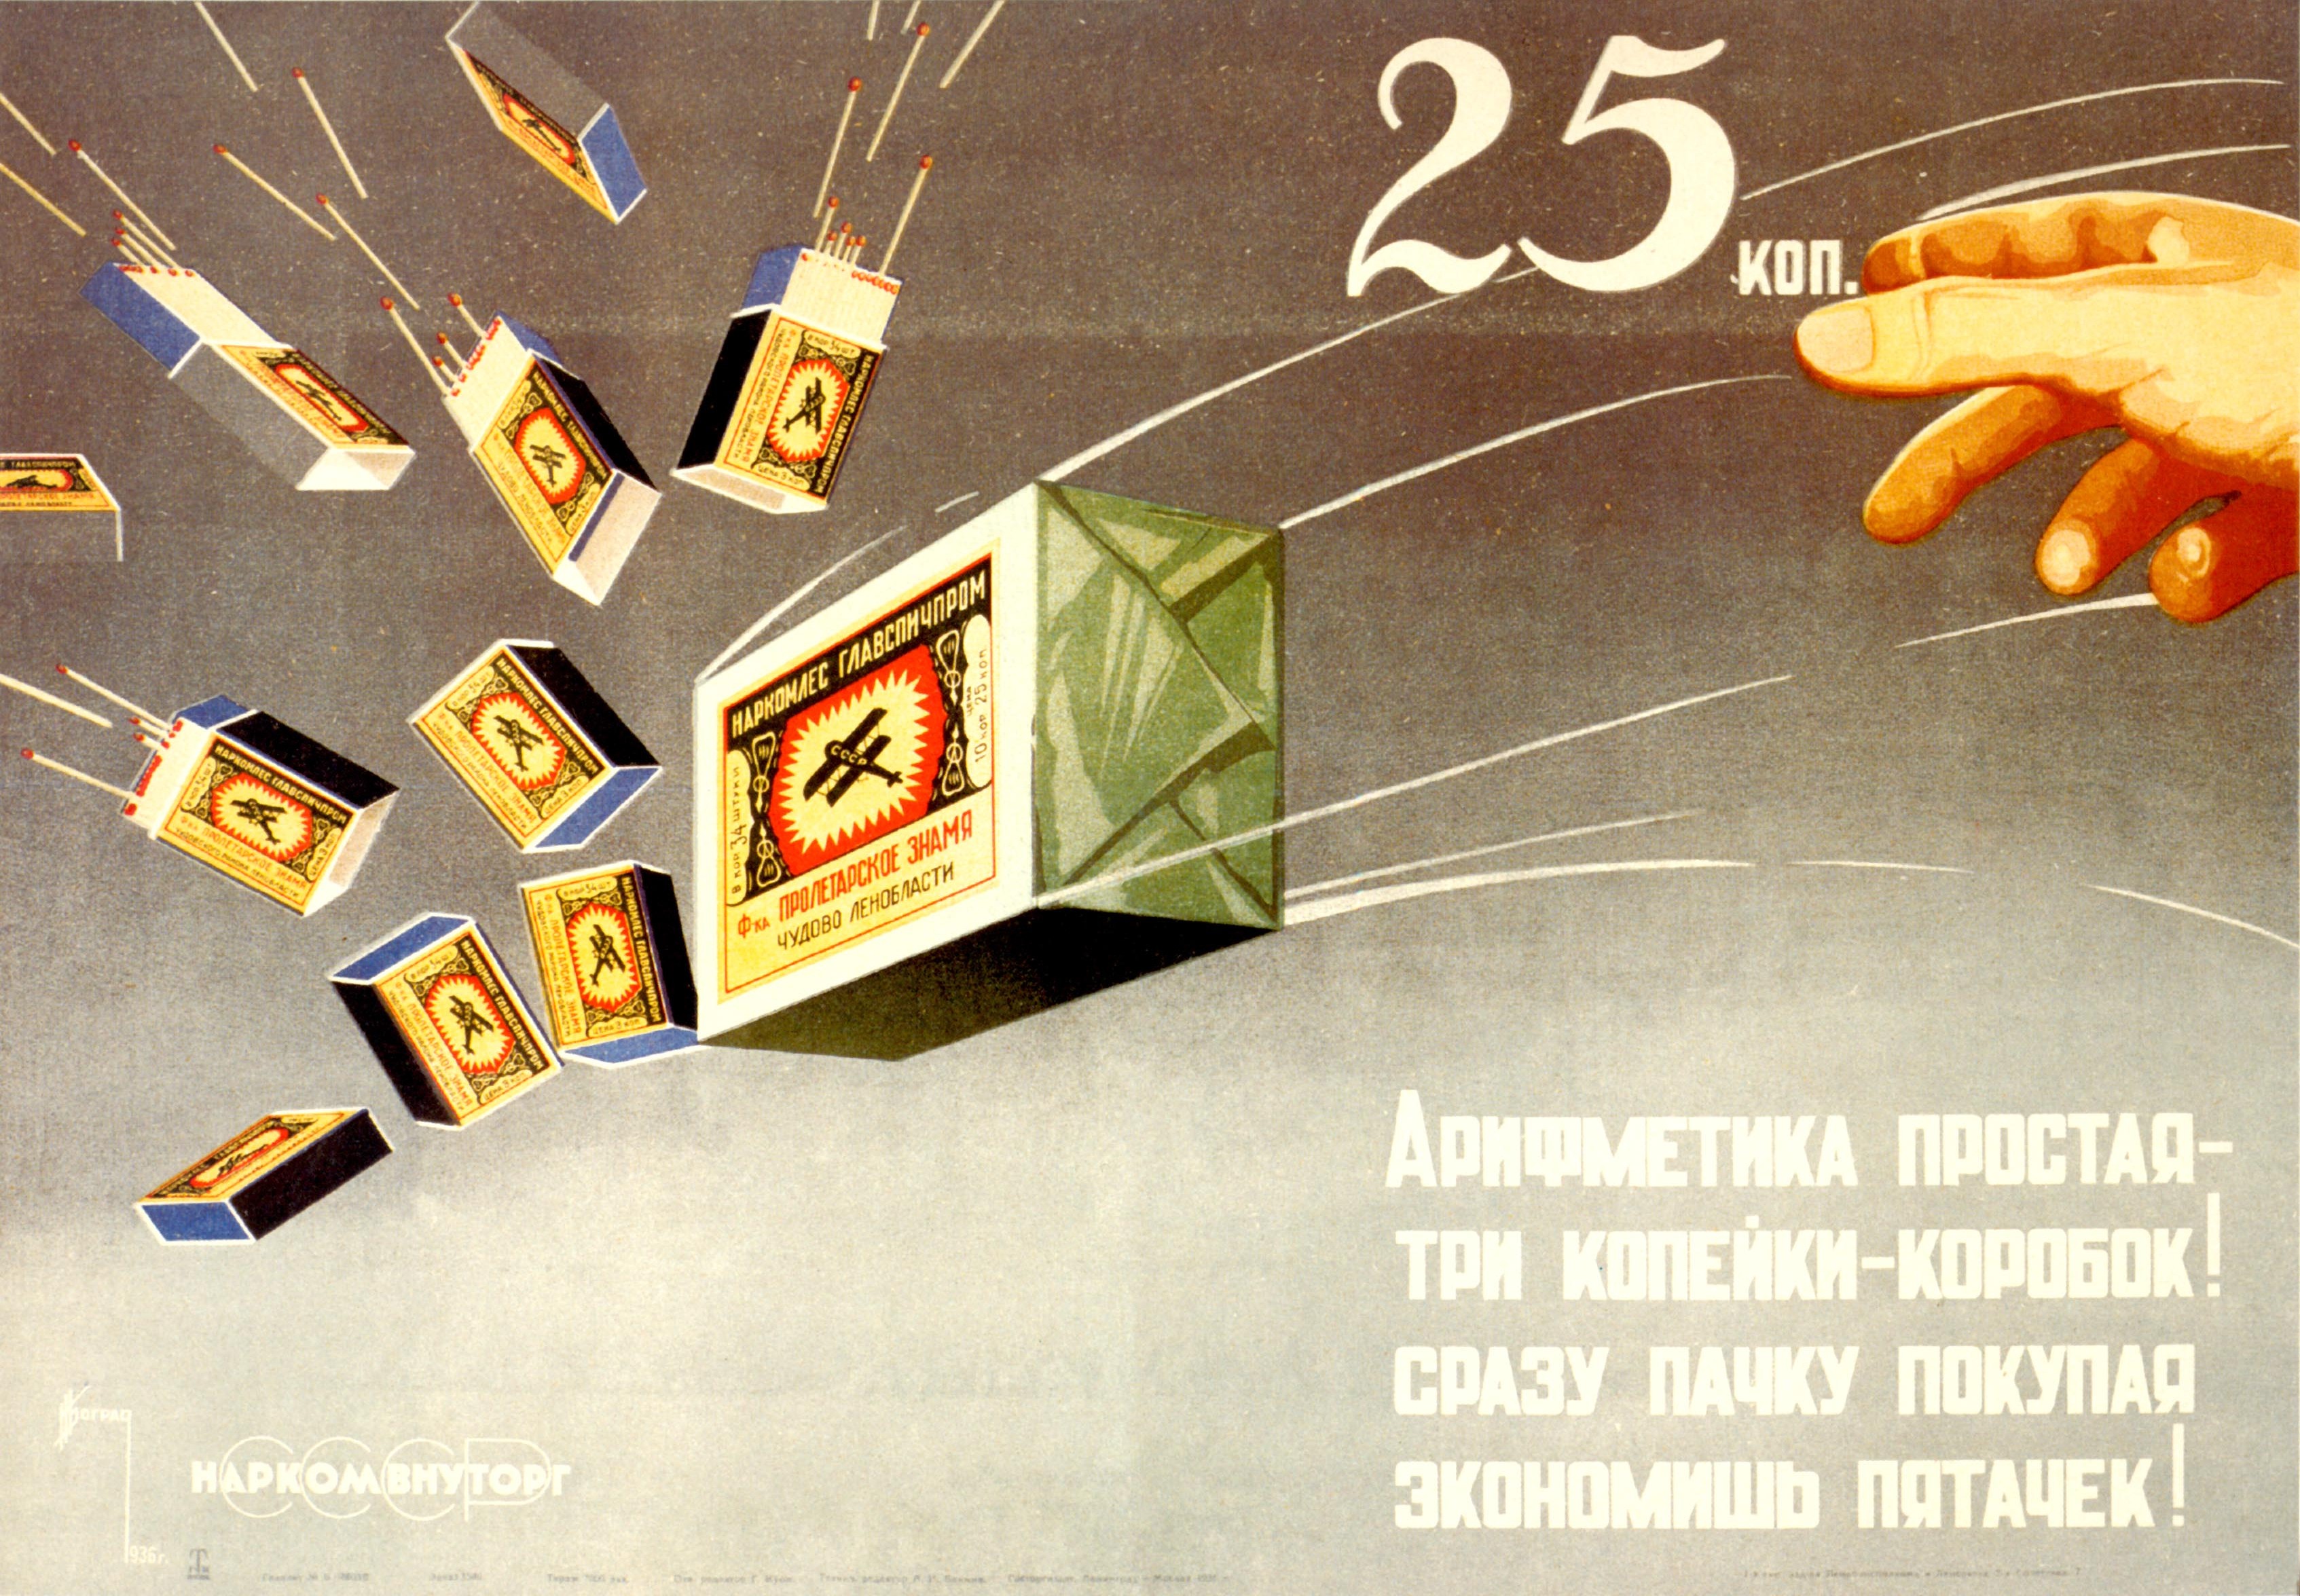 Старая реклама со времён СССР.